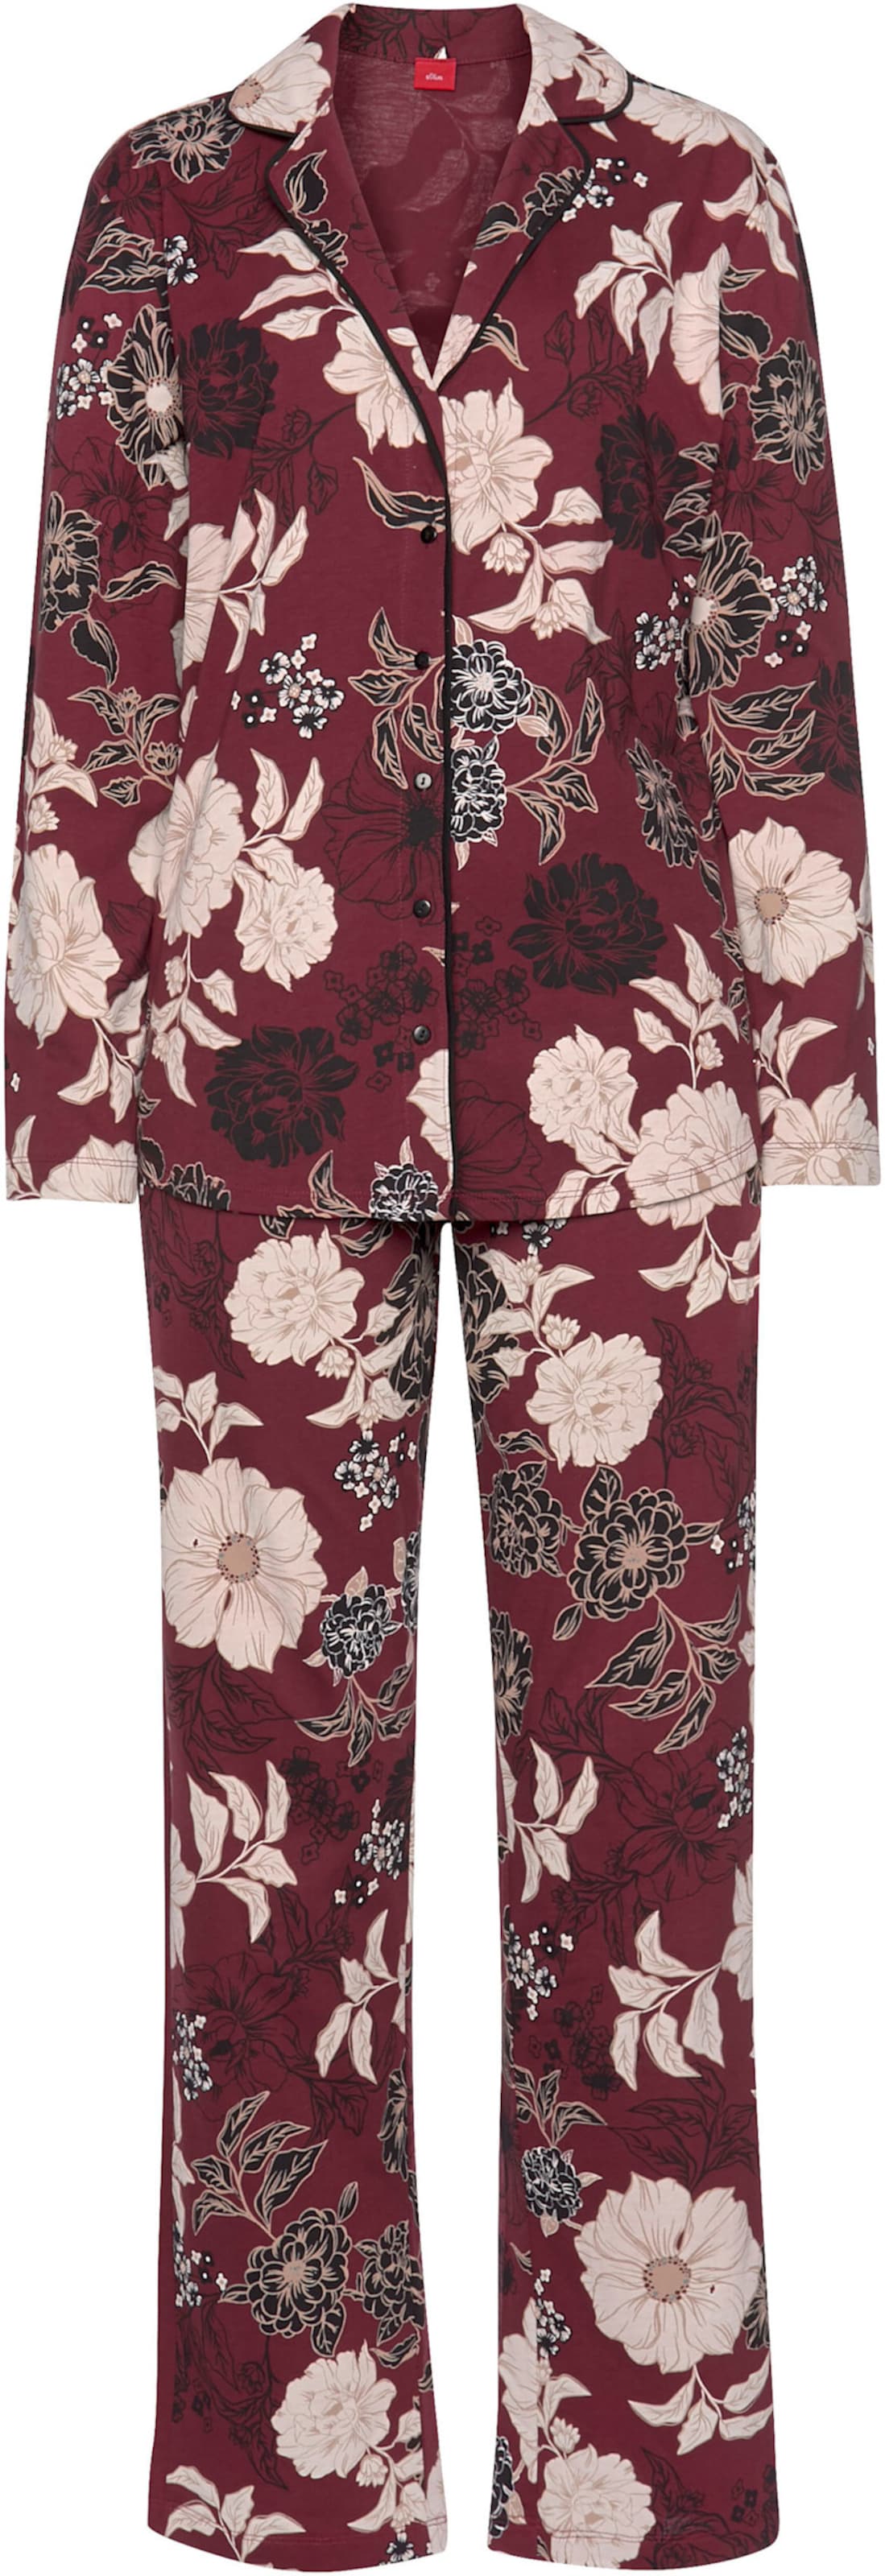 Pyjama in bordeaux-geblümt von s.Oliver